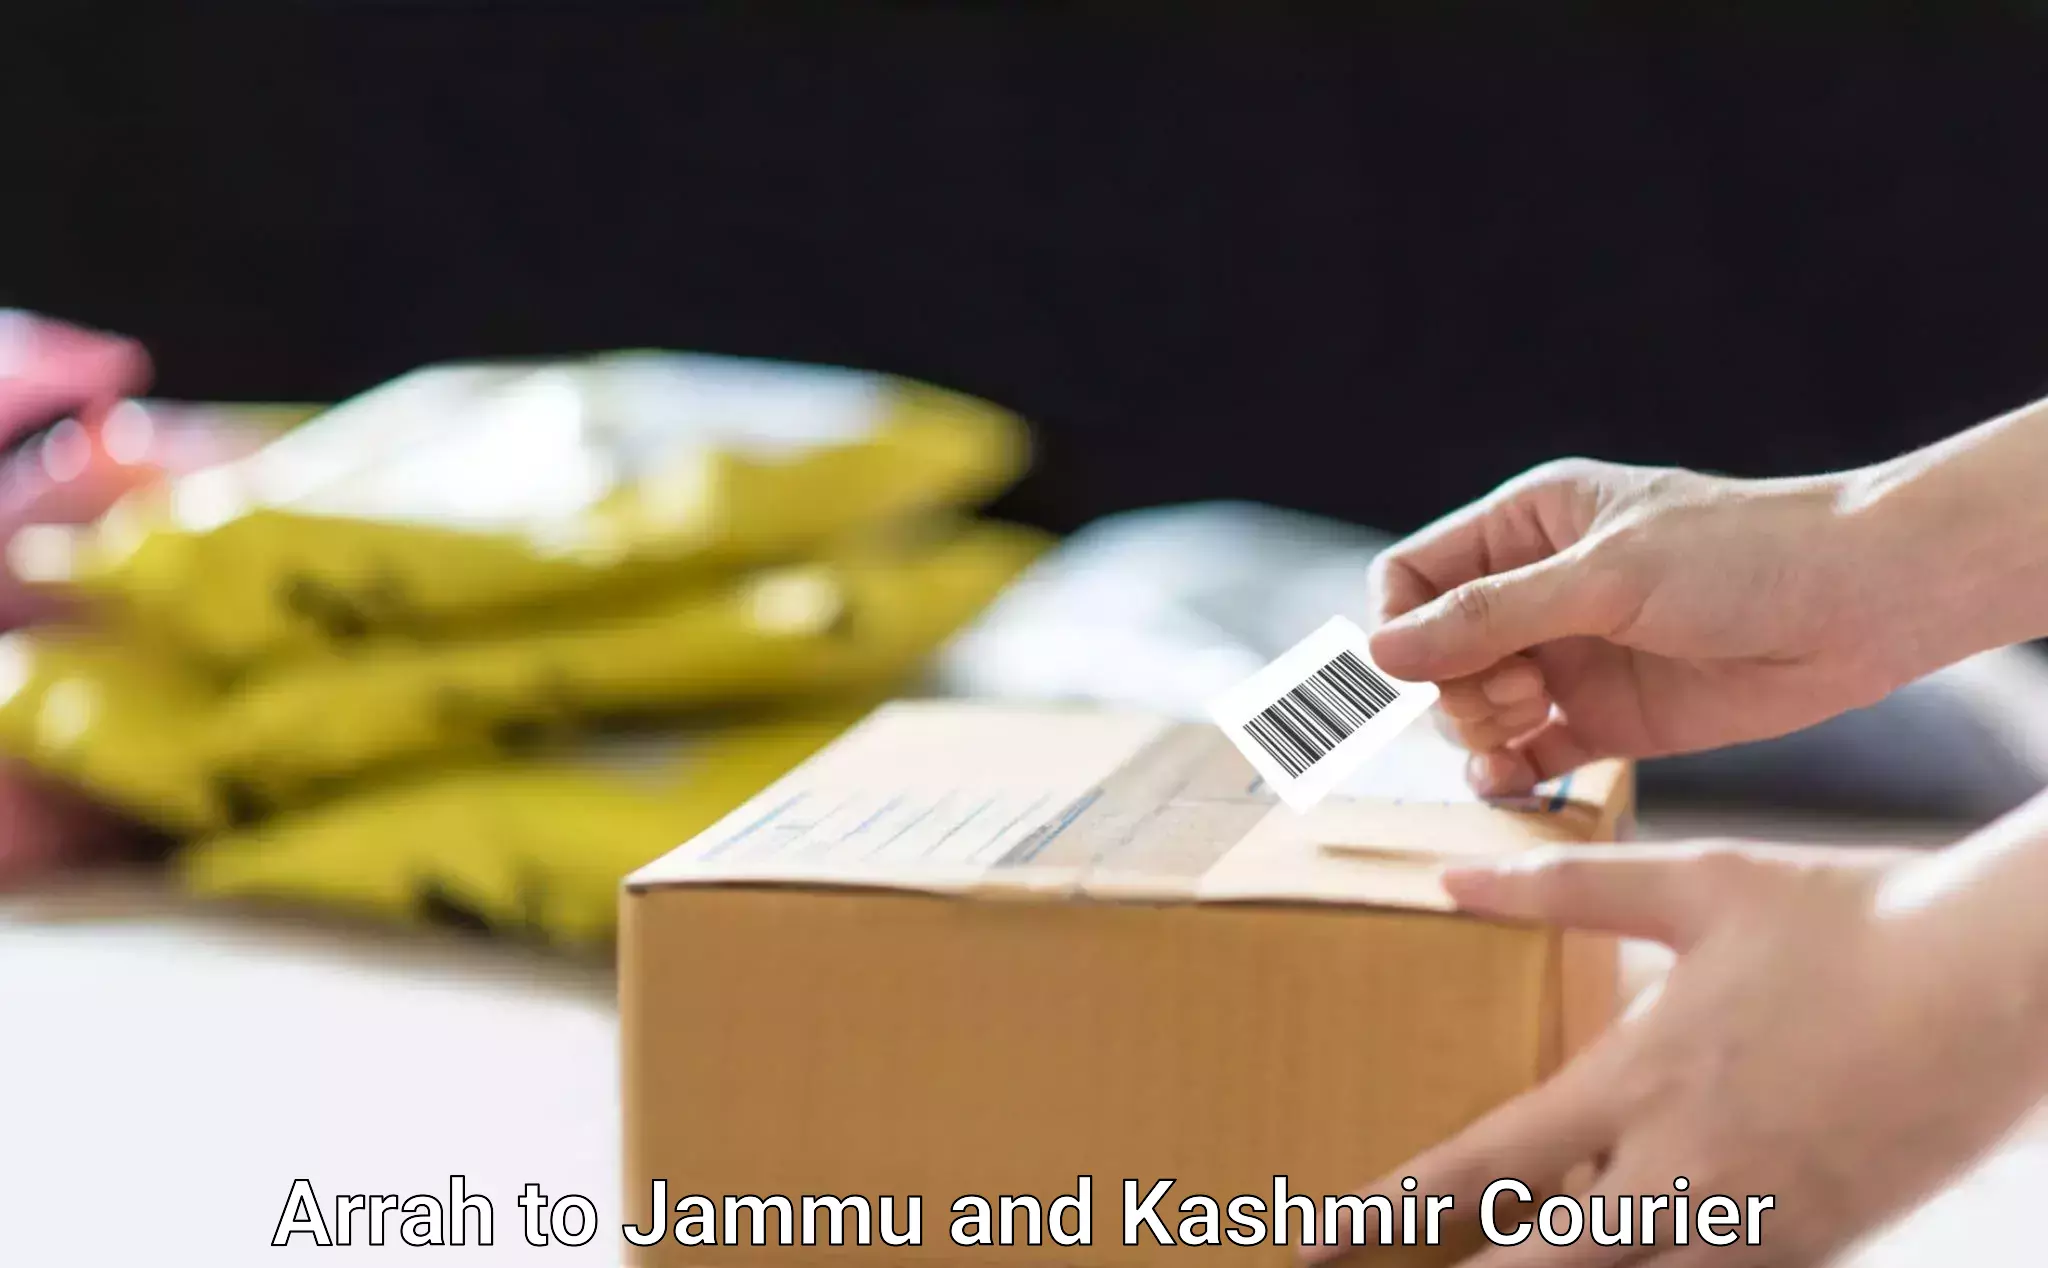 Professional furniture movers Arrah to Jammu and Kashmir